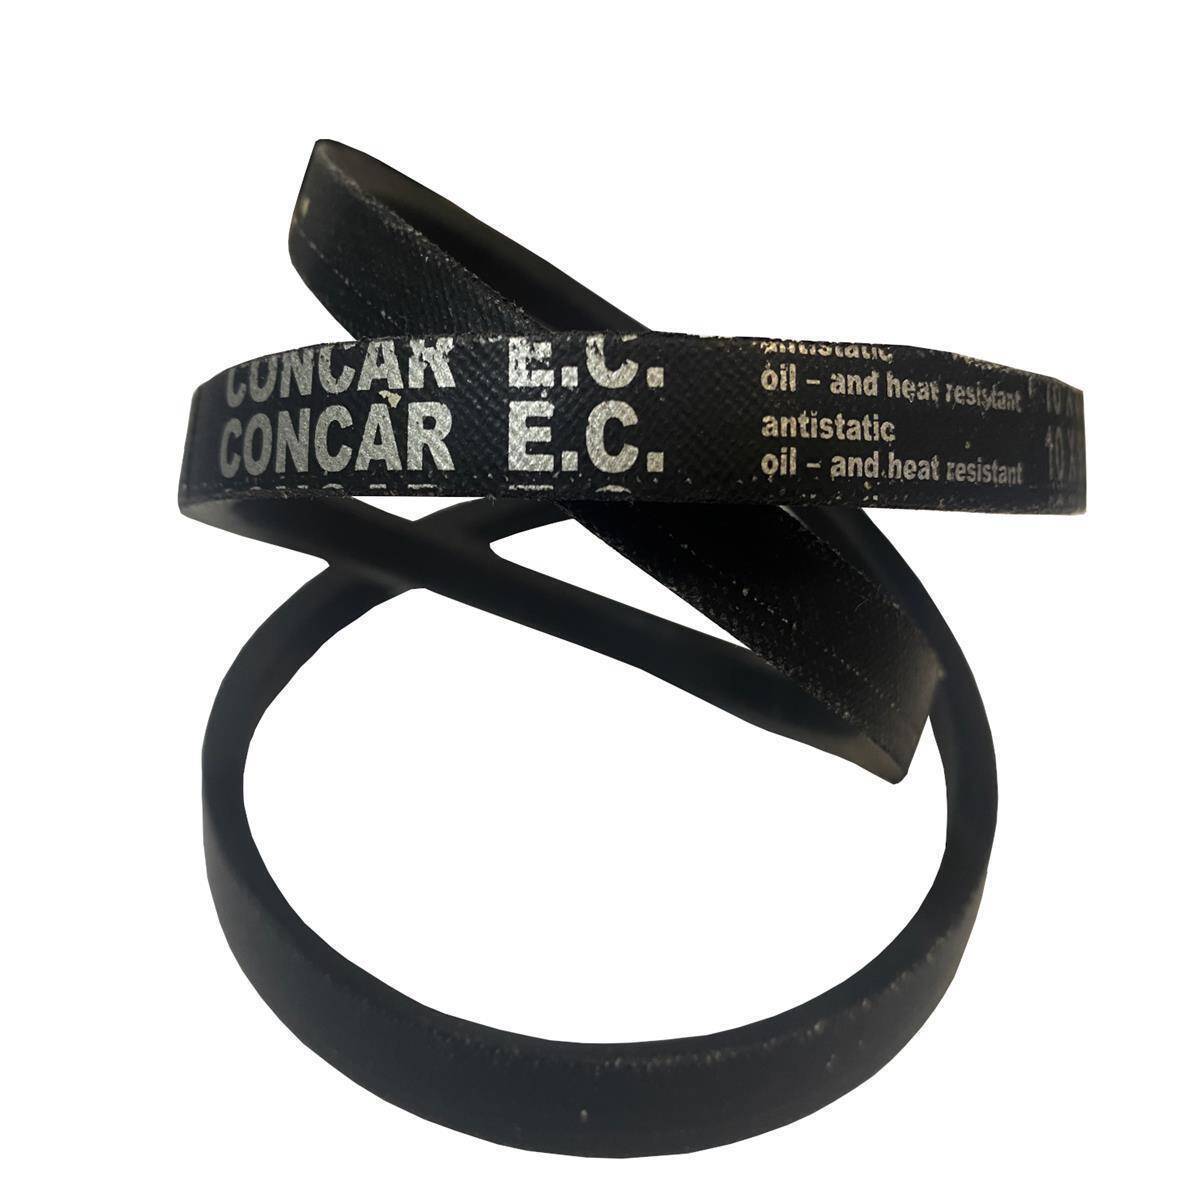 ConCar Z29 - 10 x 730 Li, Keilriemen, klassisch, 6,15 €